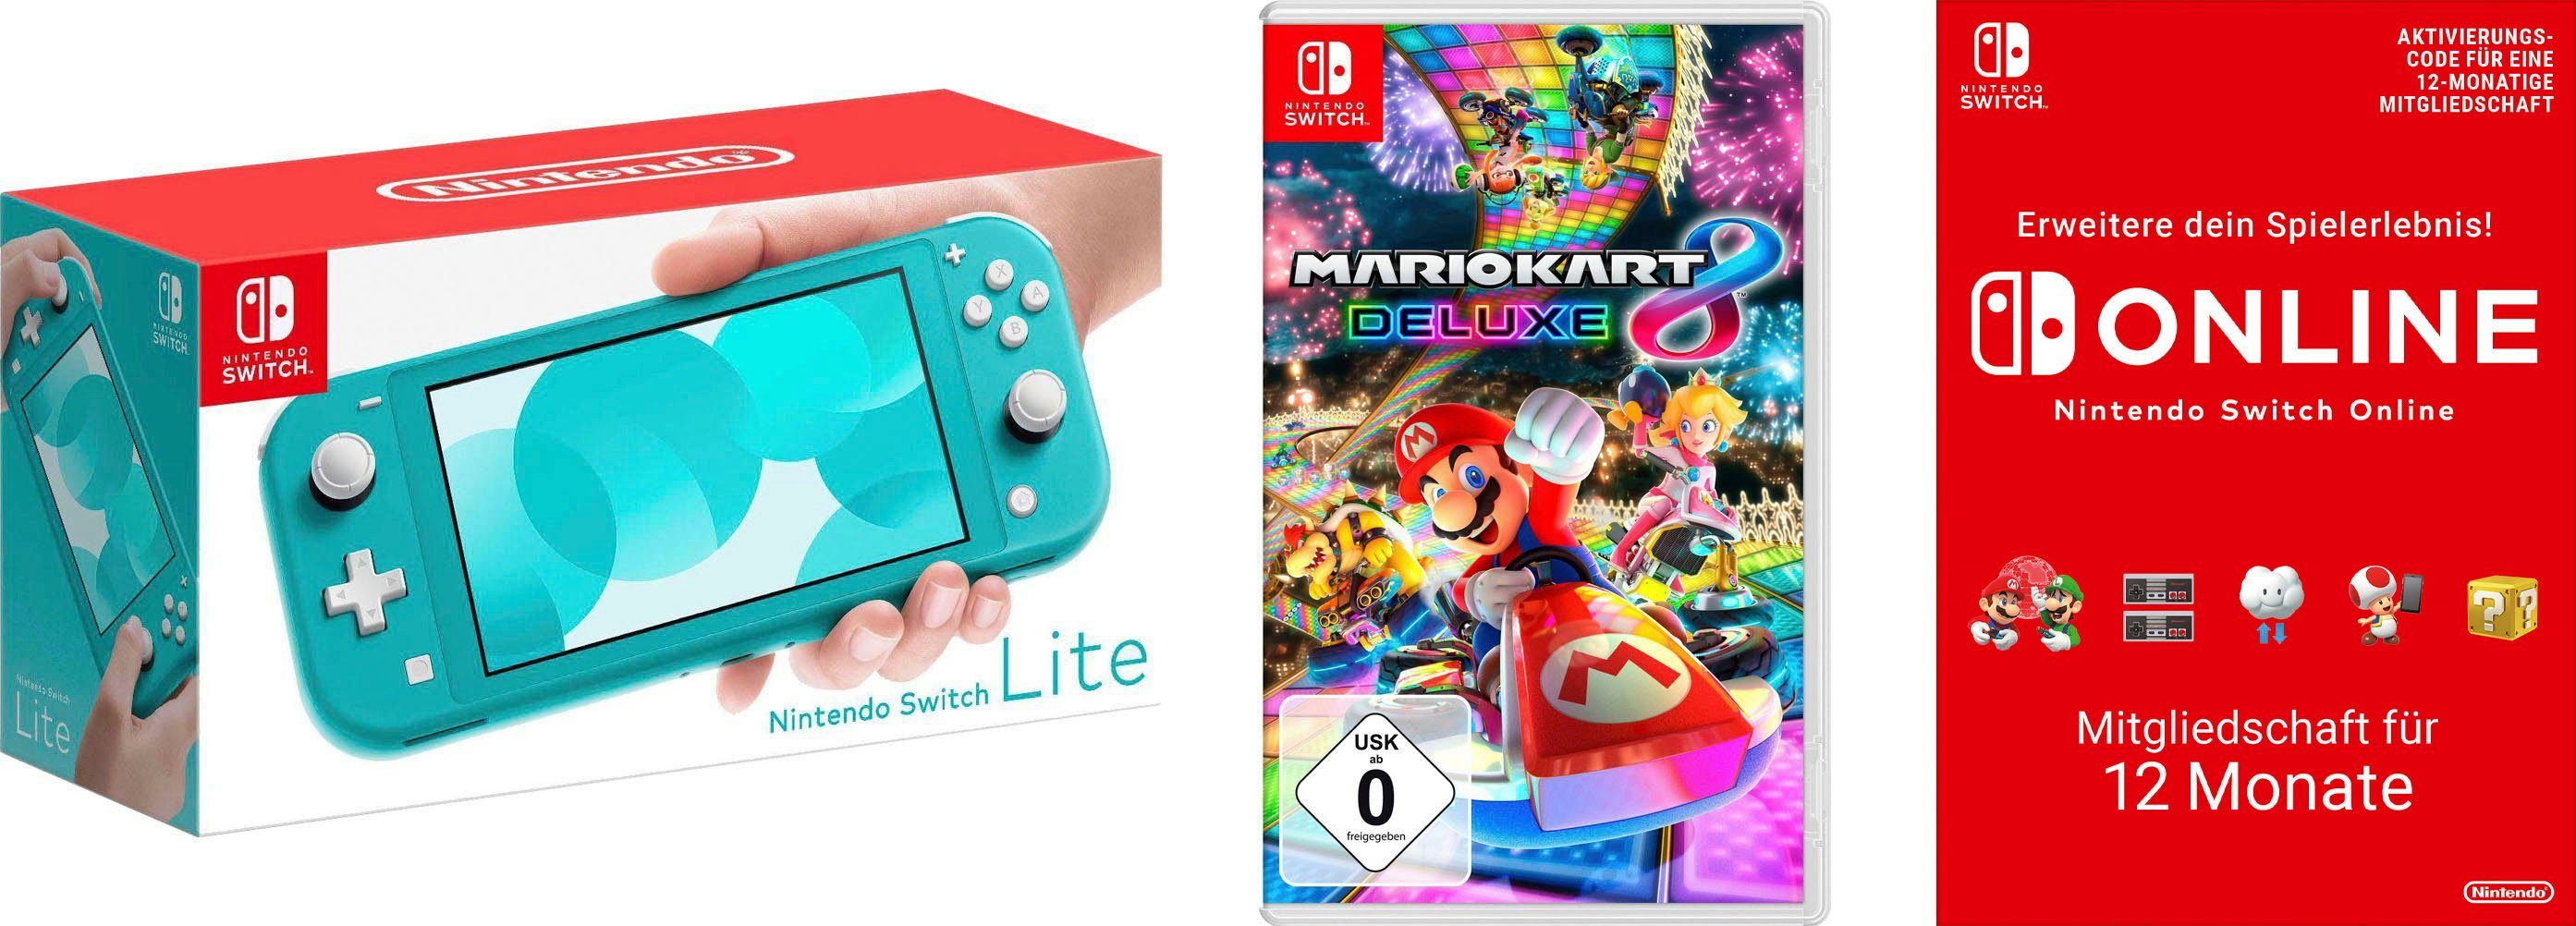 Nintendo Switch Lite, inkl. Mario 8 Deluxe